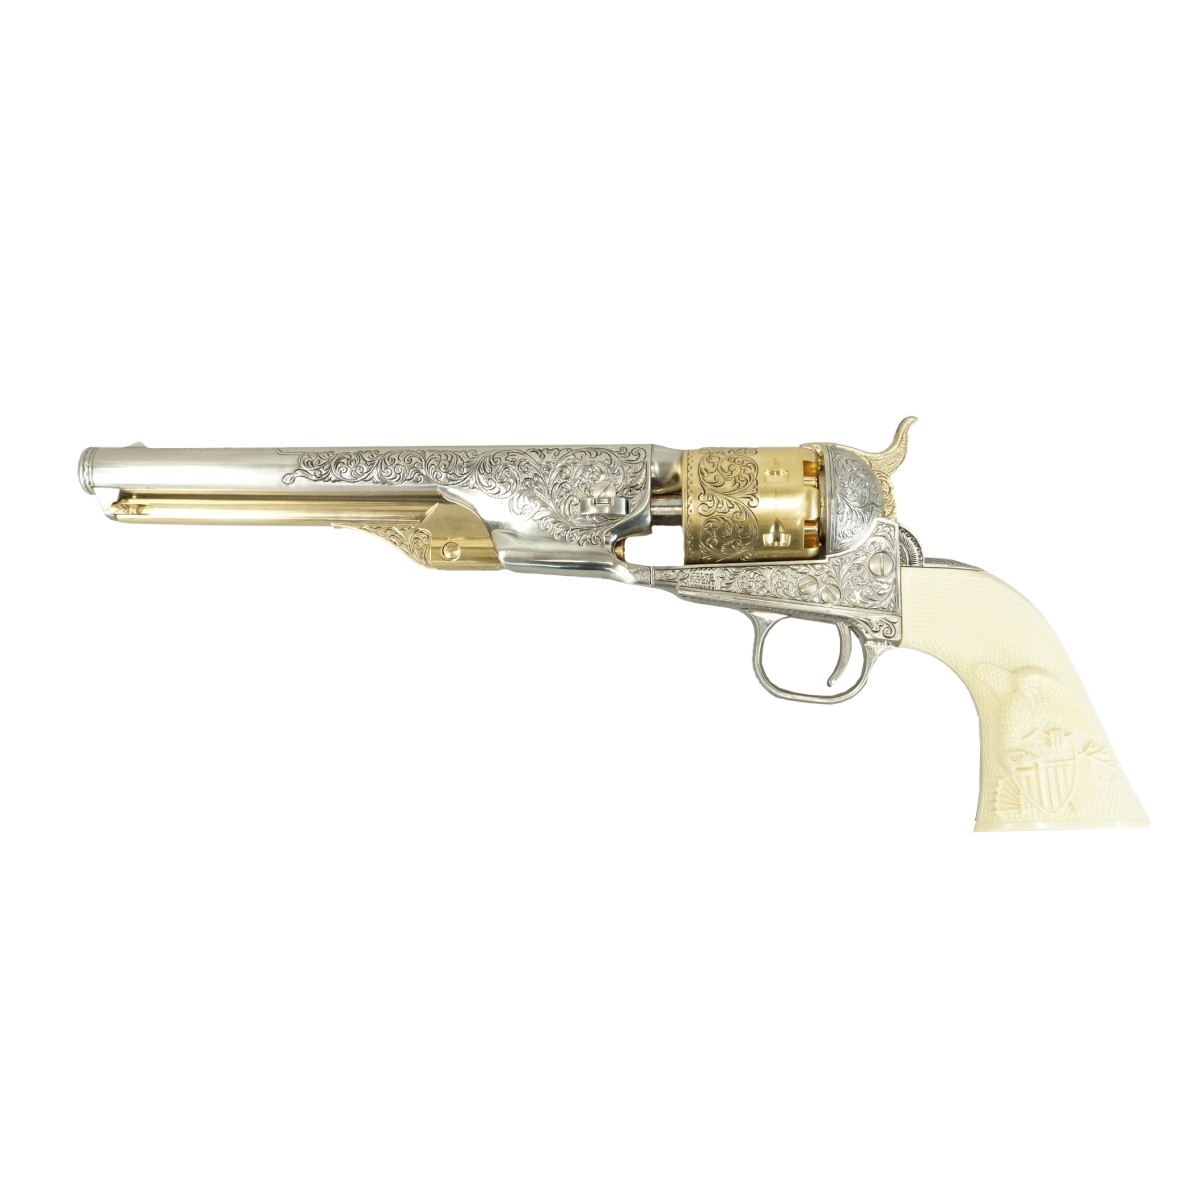 Replica General Custer's .36 Revolver